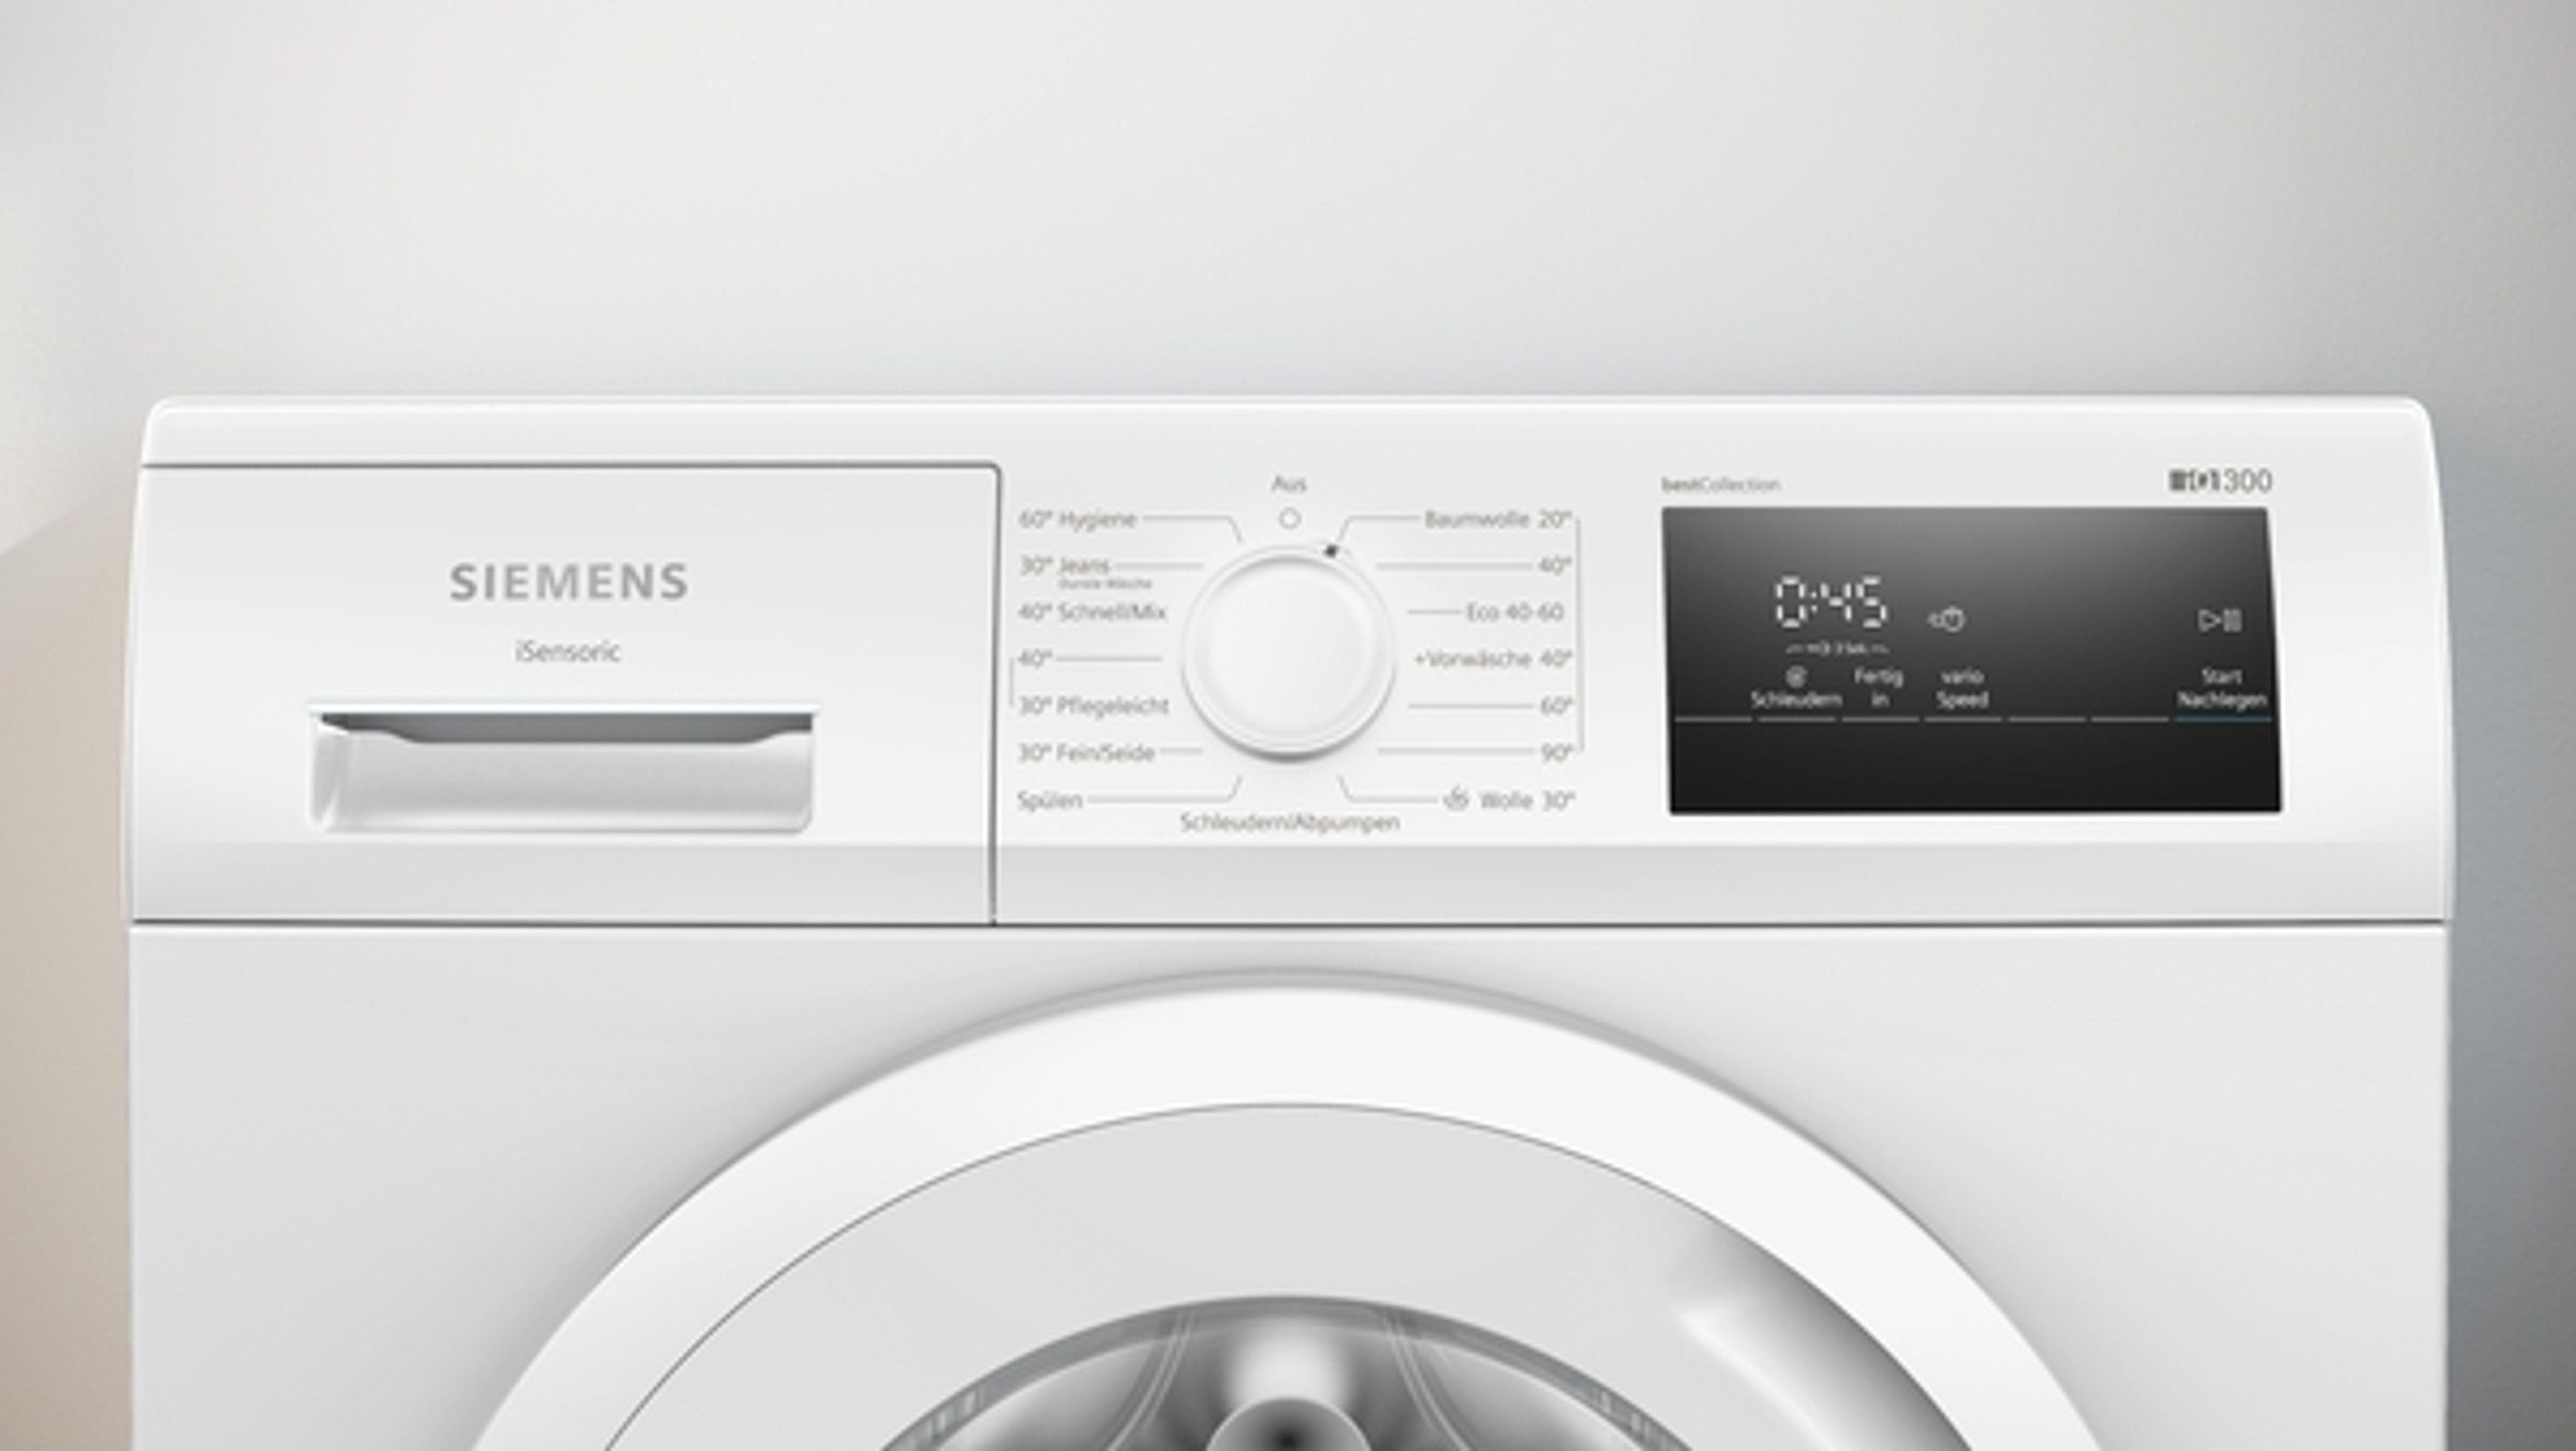 1354 U/min, 7 touchControl-Tasten, iQdrive, SIEMENS Waschmaschine Nachlegefunktion WM14N0H3, kg,